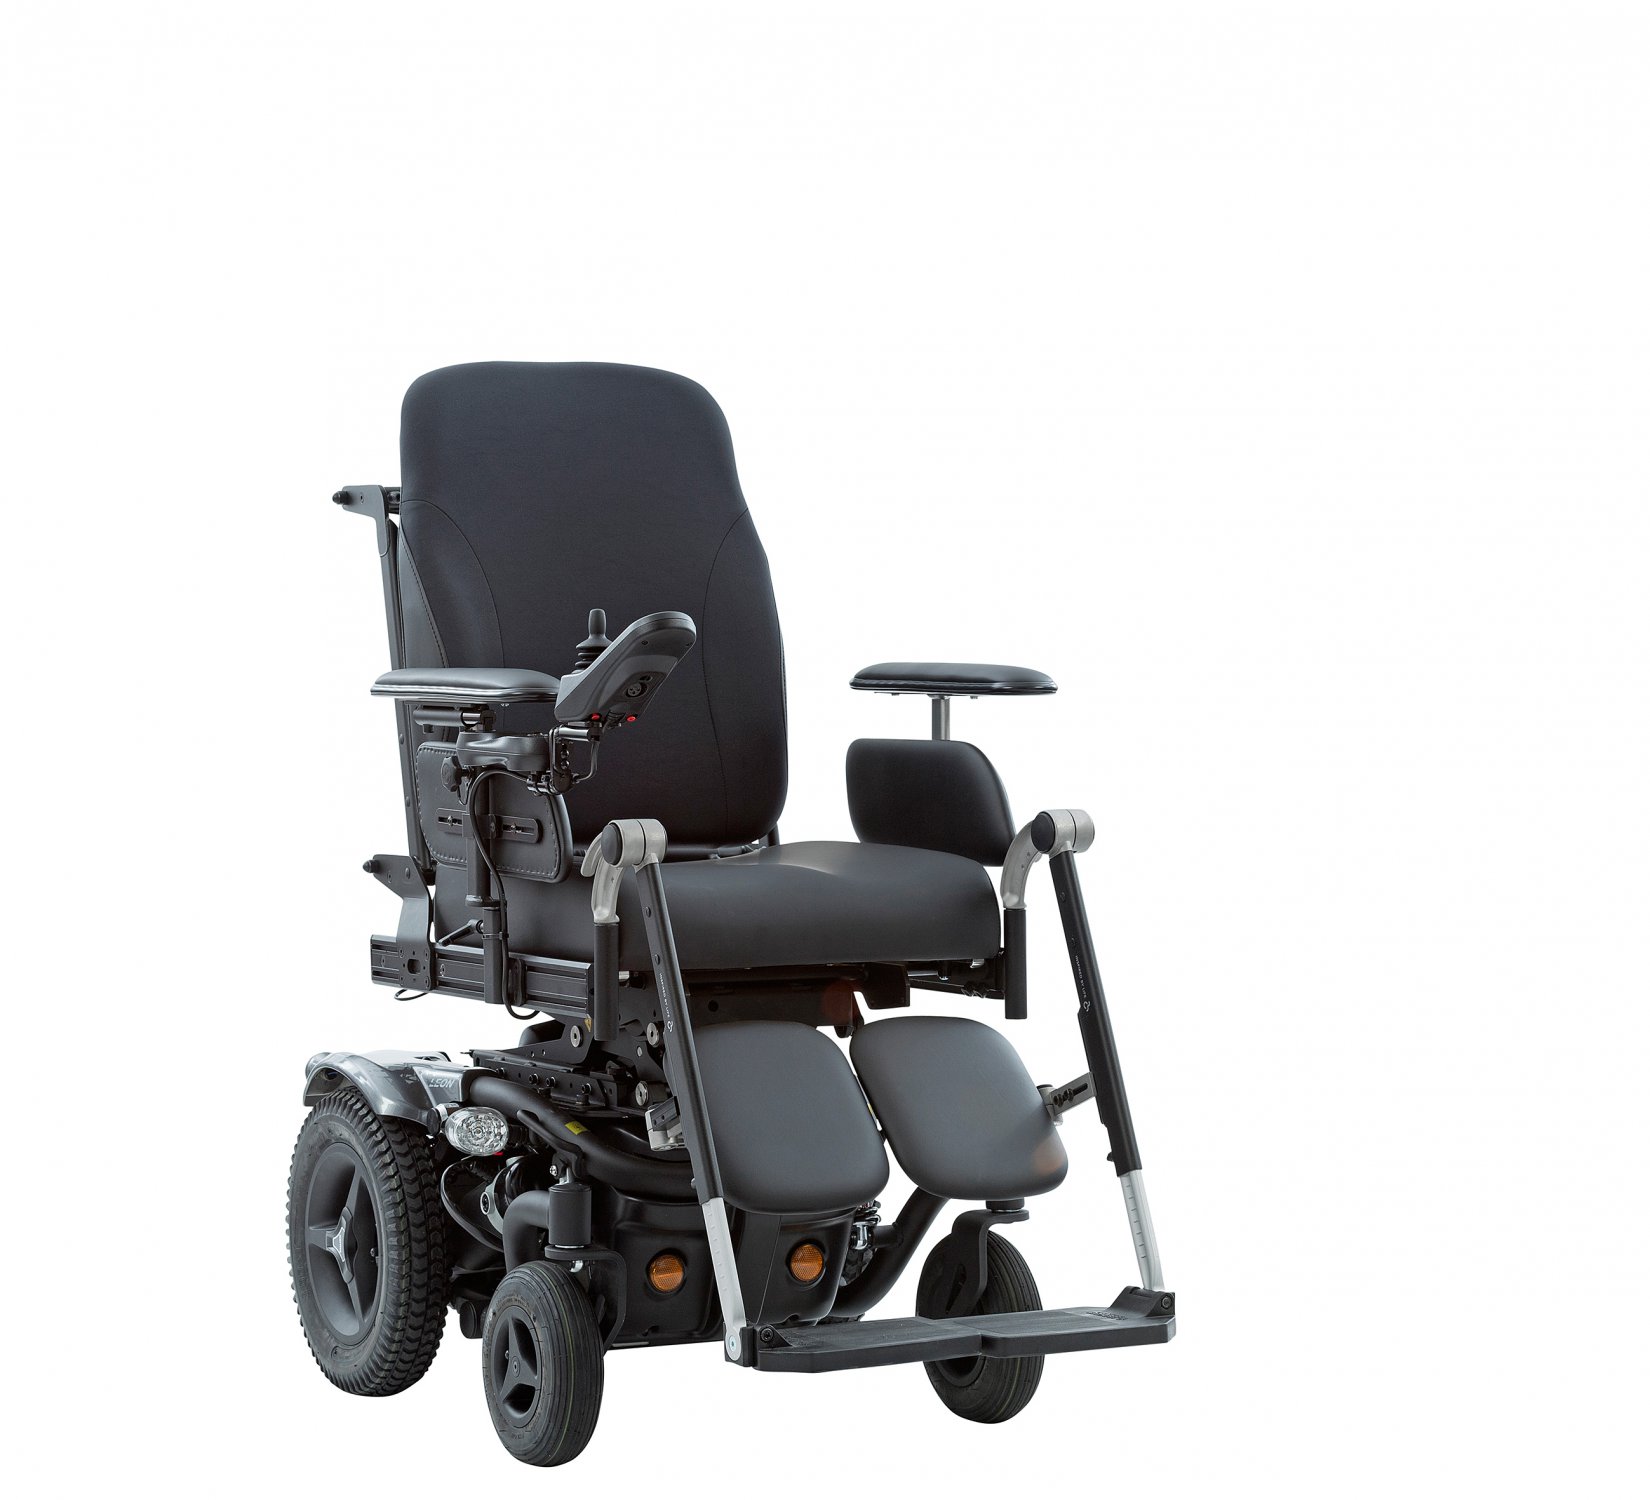 Chargeur 24V/8A fauteuil roulant électrique – Access' Santé